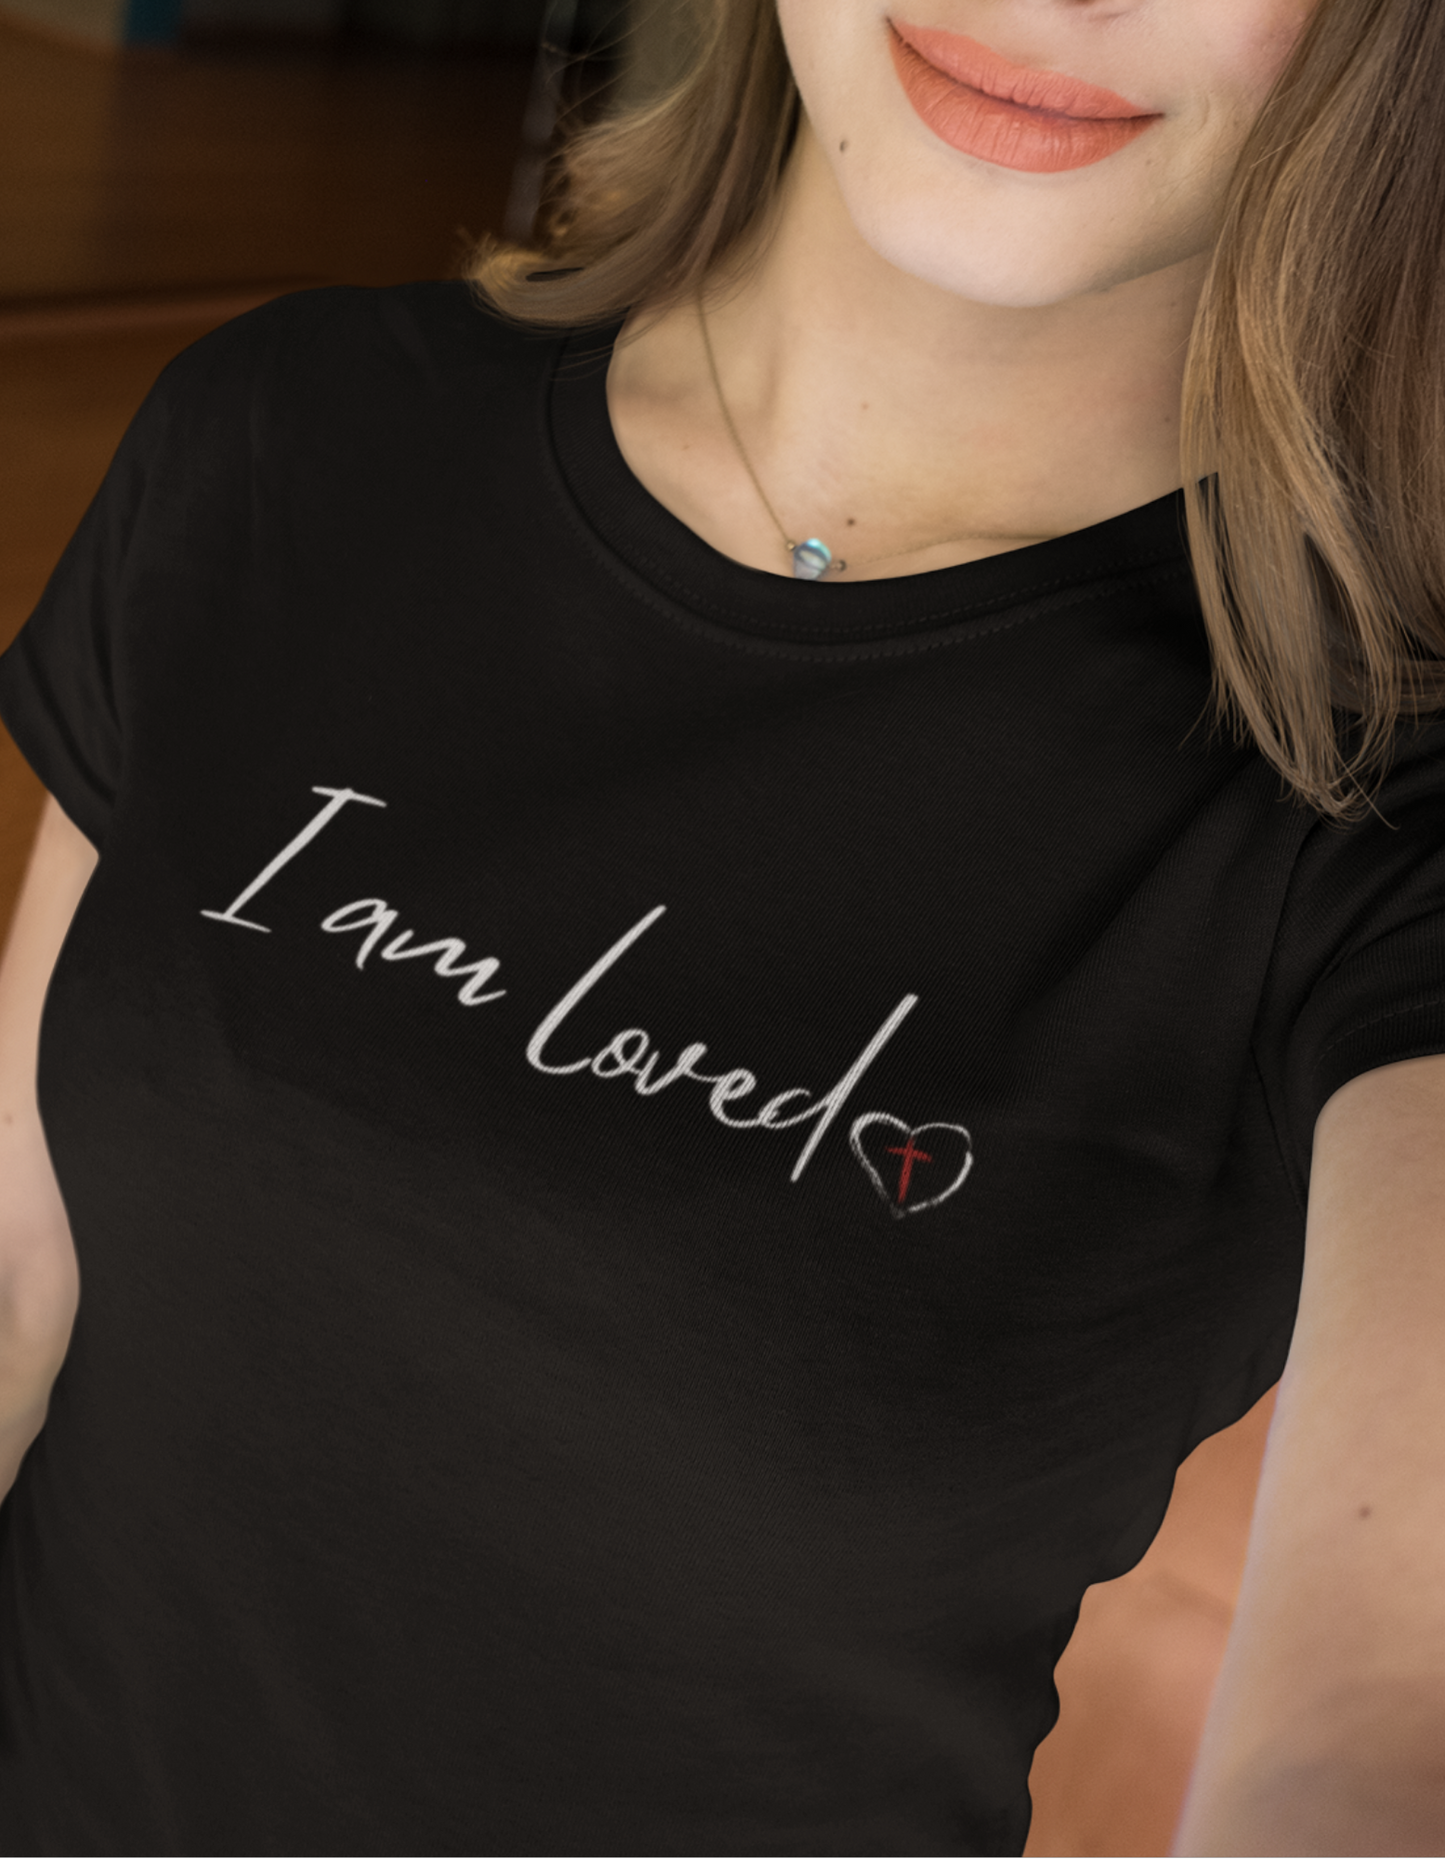 I am Loved Women's T- Shirt